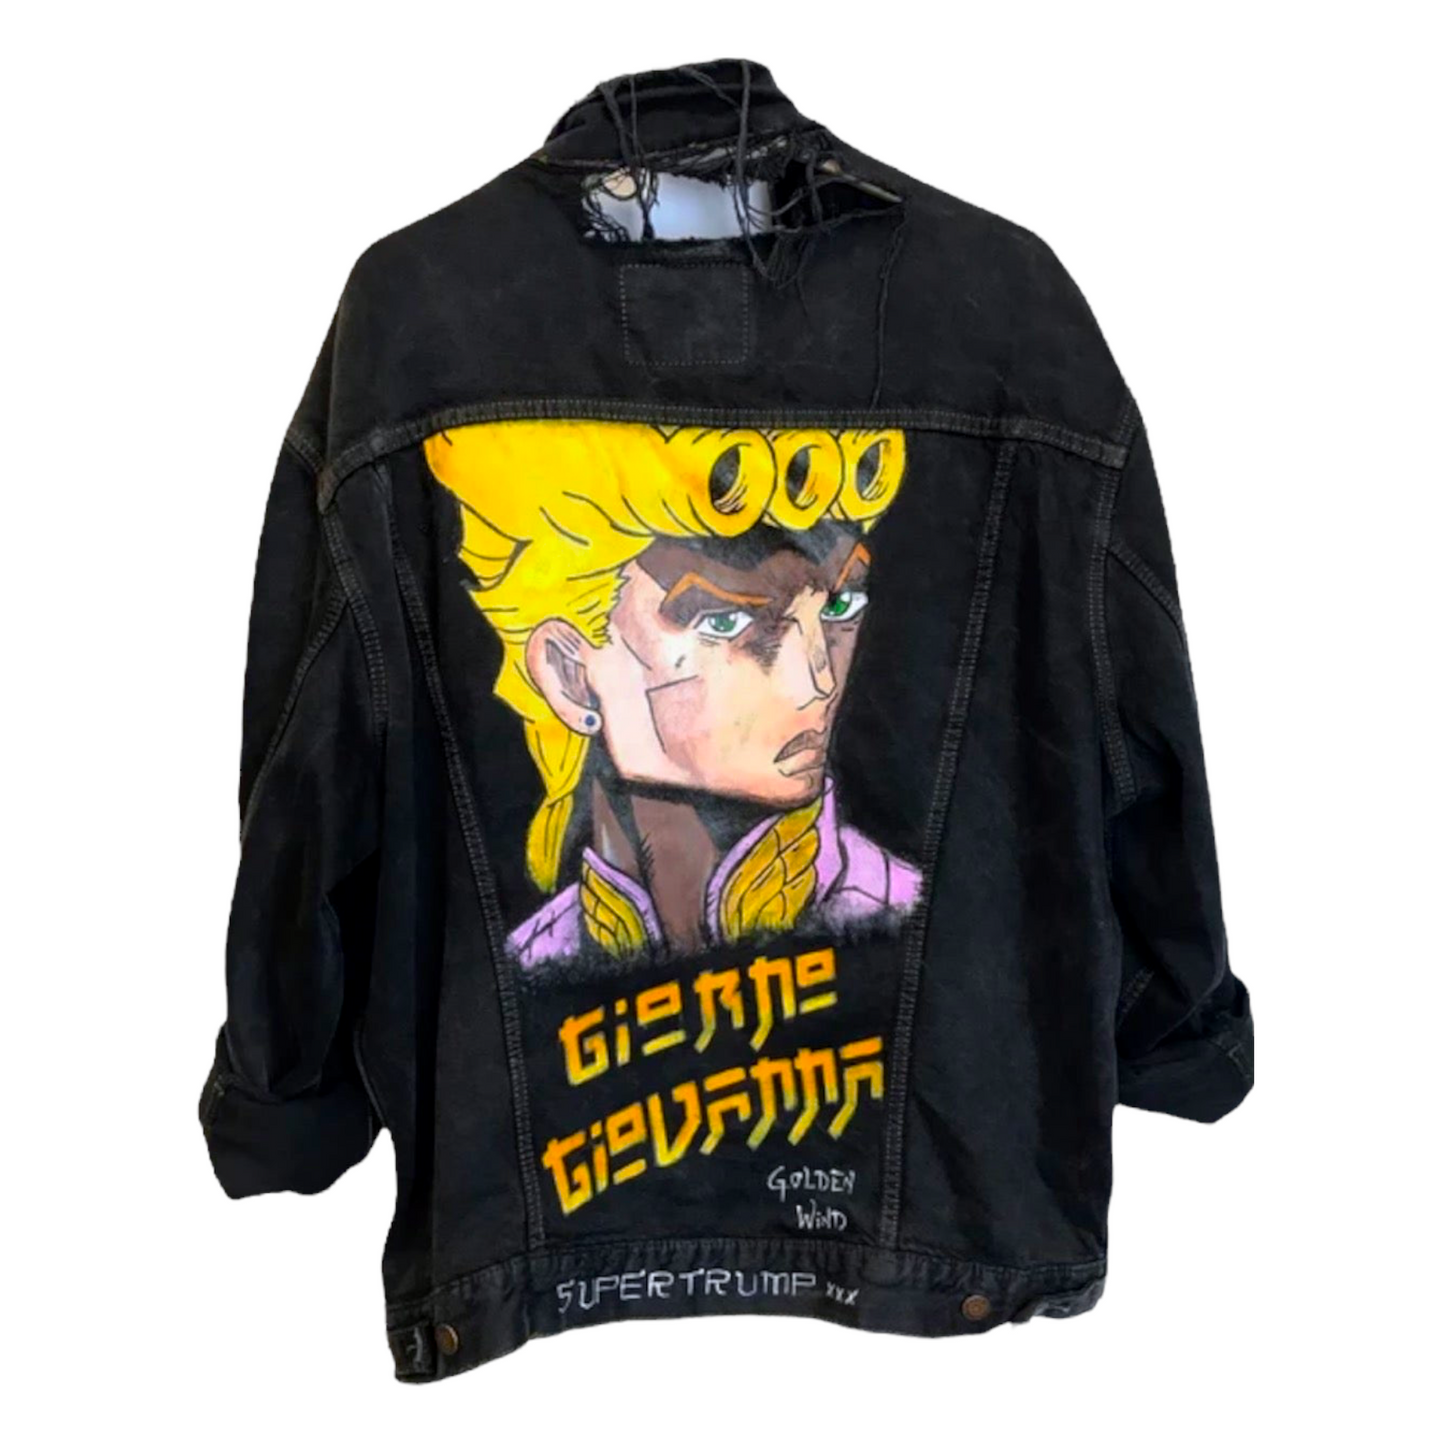 Jacket “Giorno Giovanna” Custom